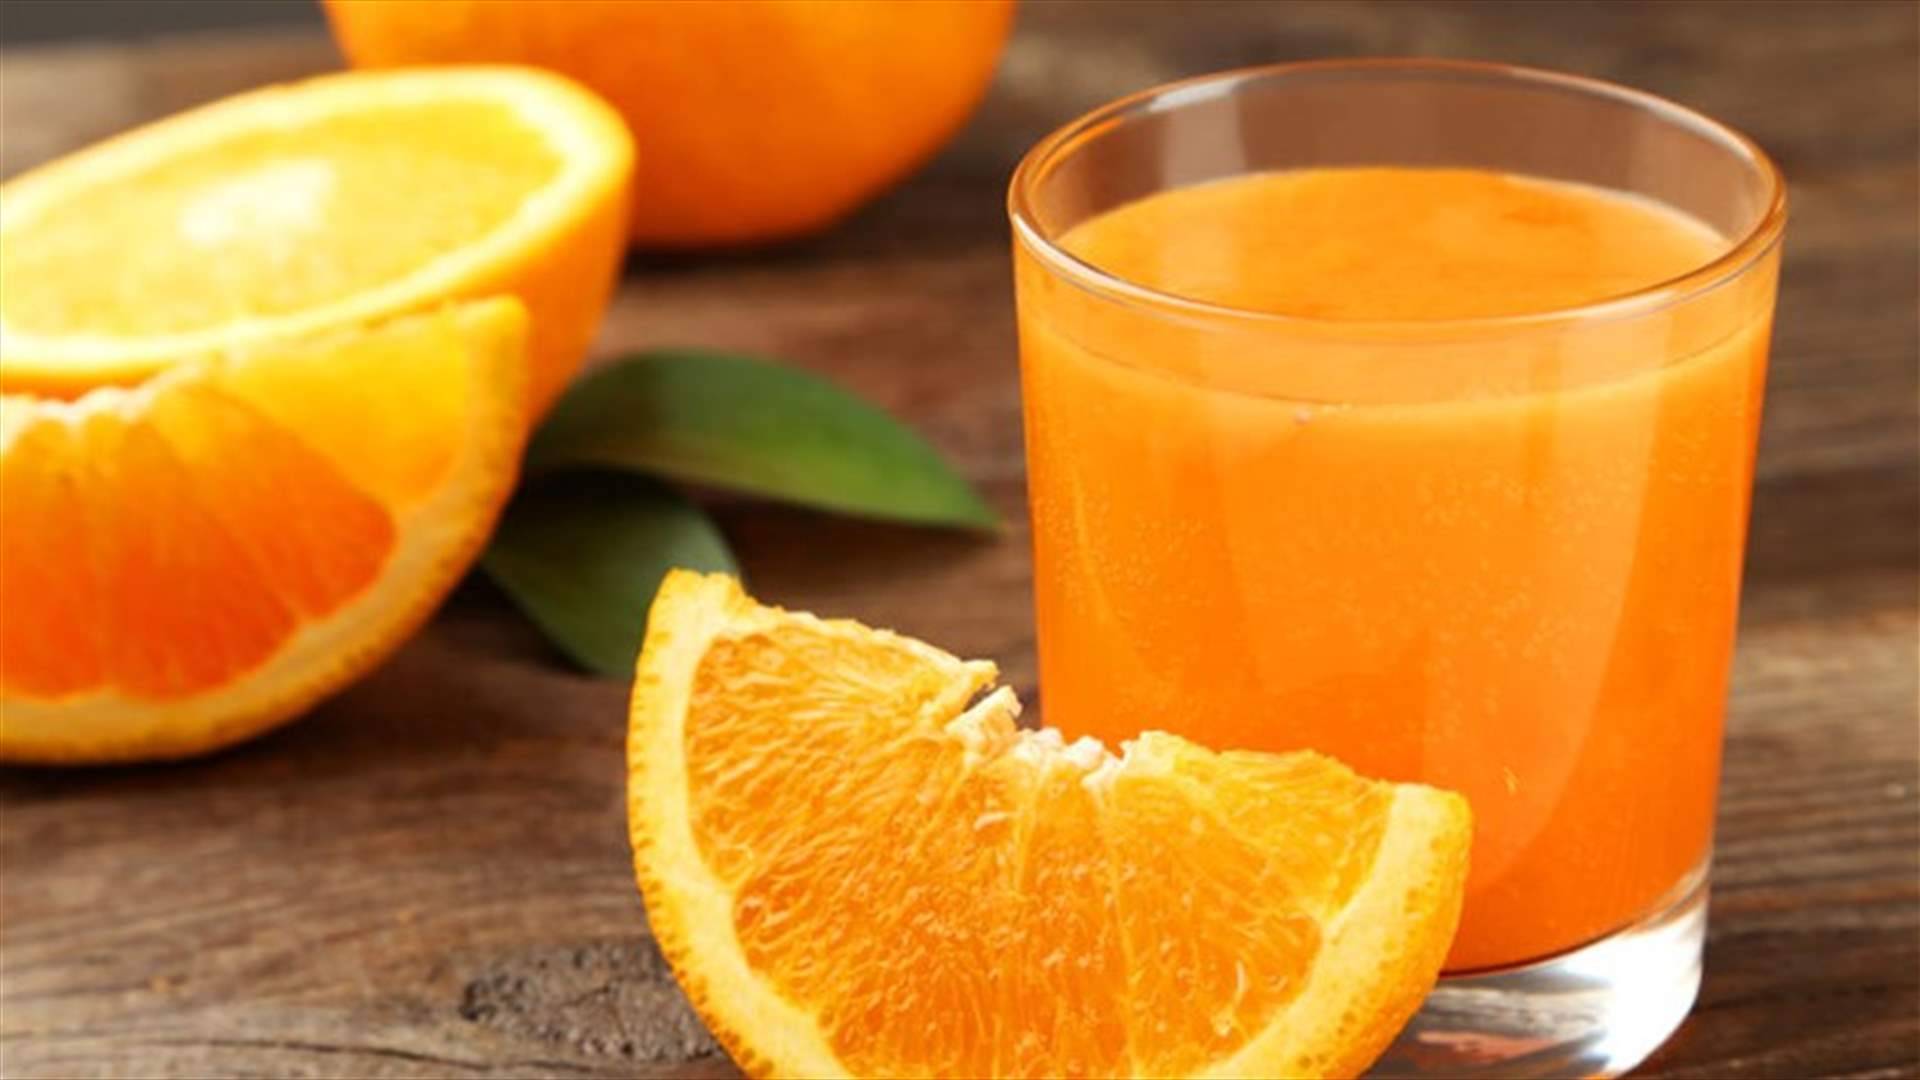 إشربوا عصير البرتقال... وستحصلون على هذه الفوائد الصحية!